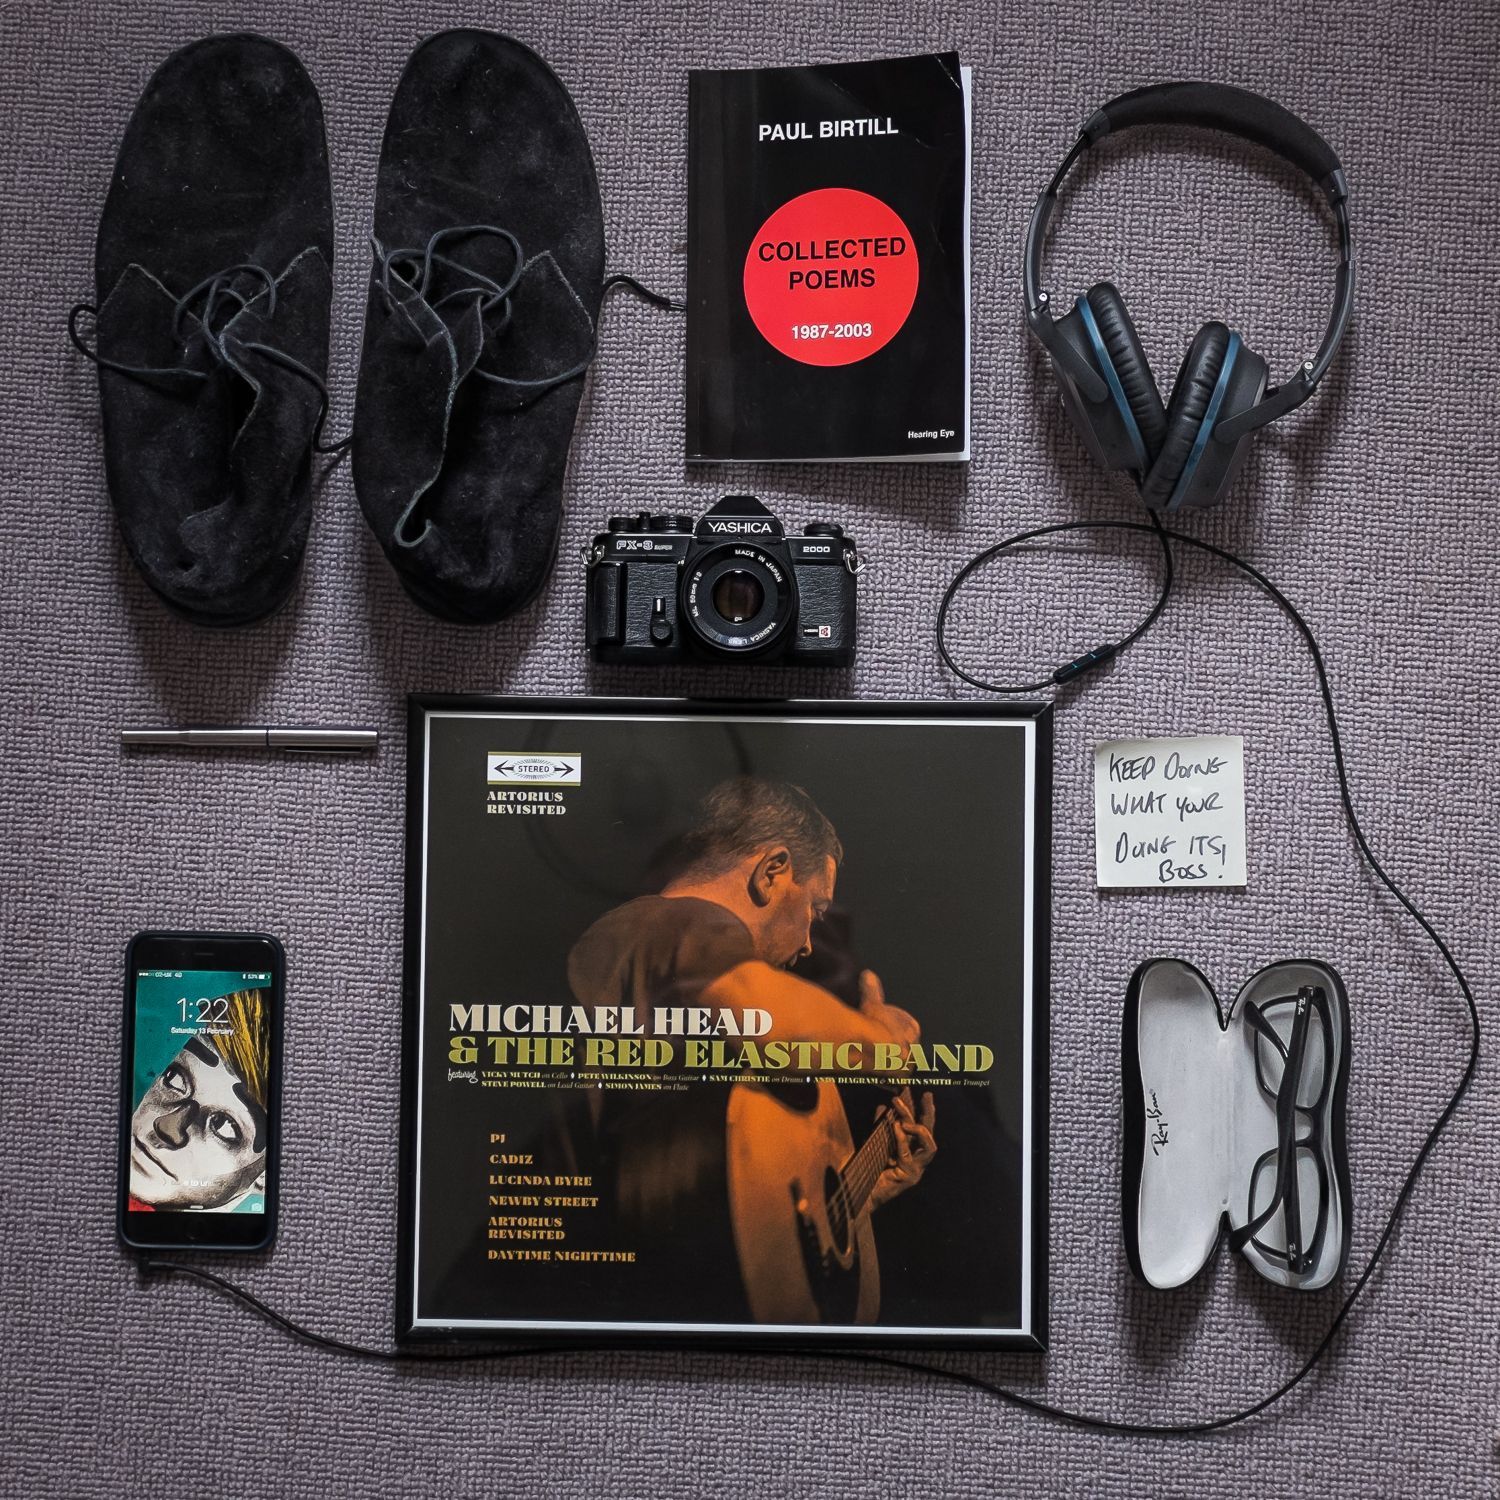 My essentials for Stereographics © Matt Lockett